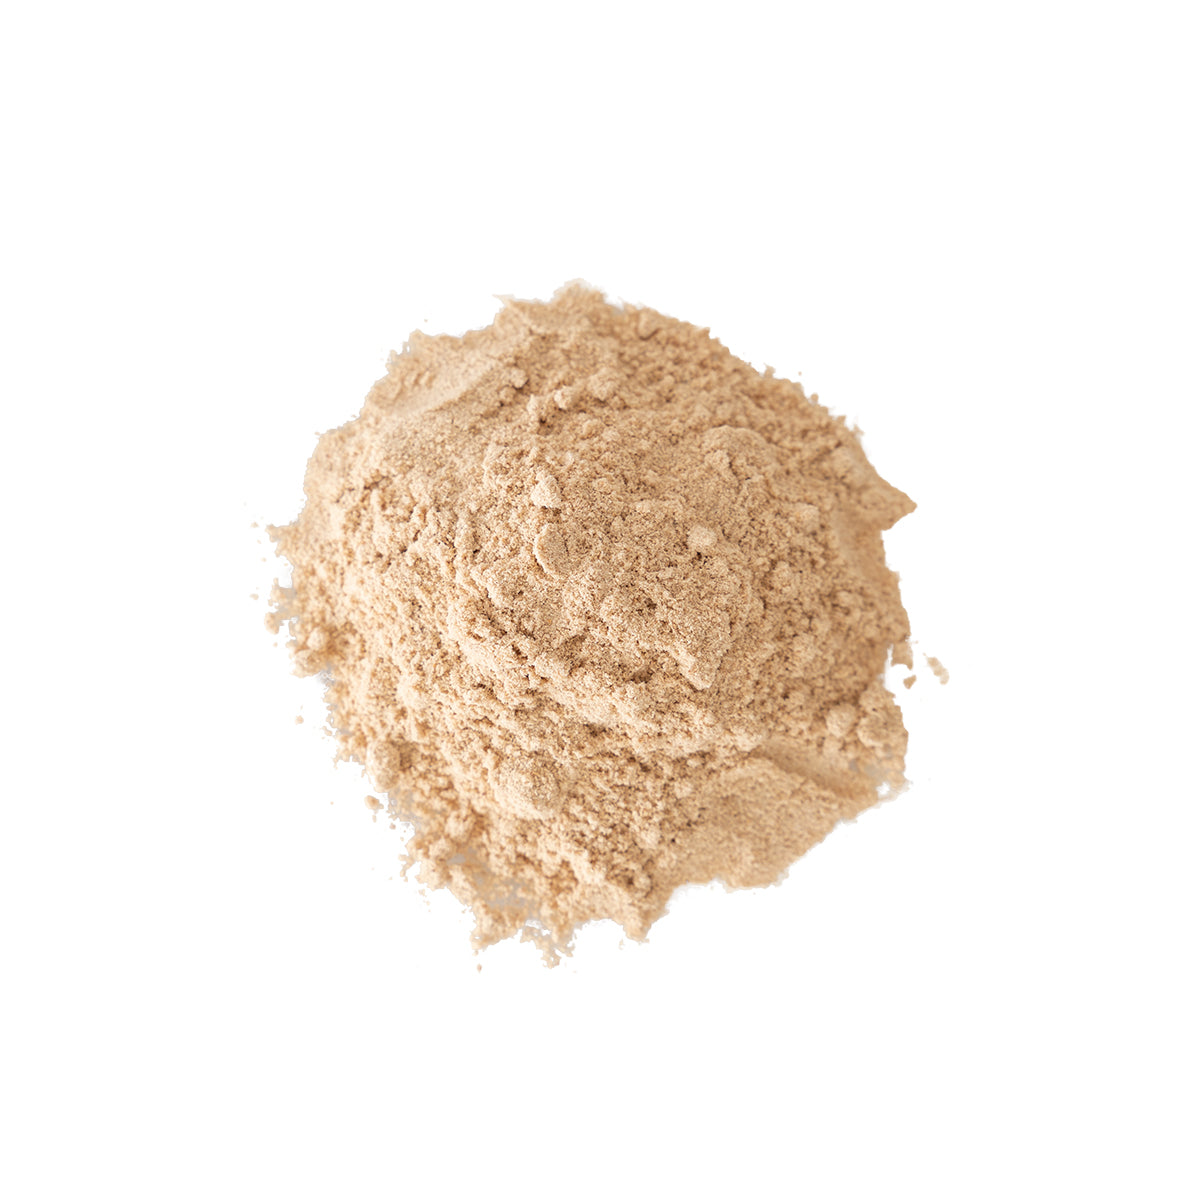 Primary Image of Calamus Root - Powder (Acorus calamus)